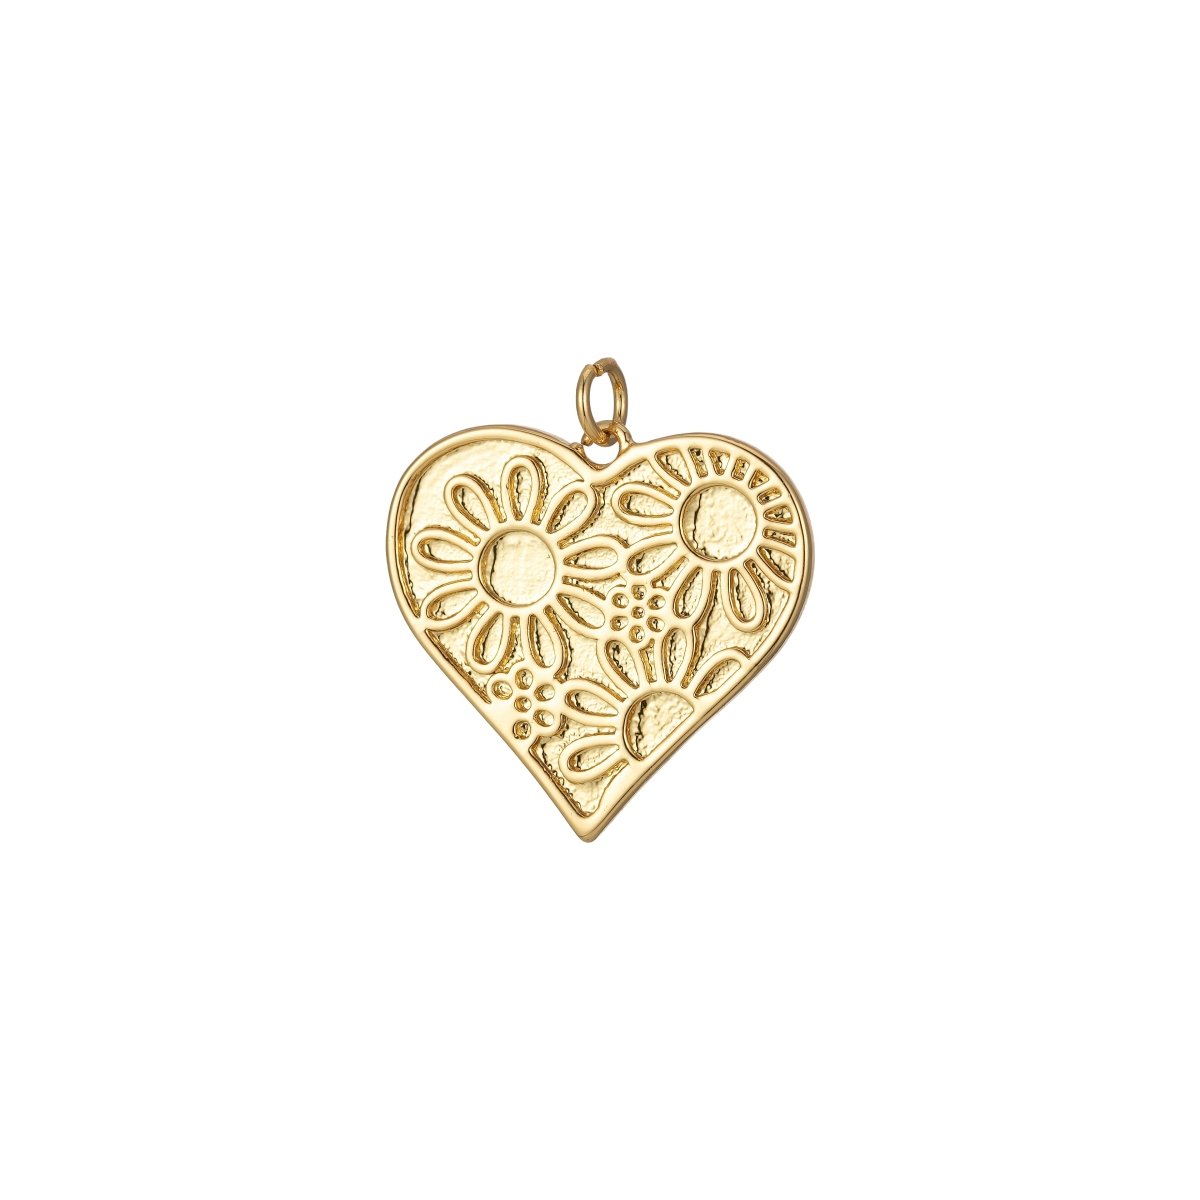 Dainty Daisy Flower Charm Enamel Heart Pendant Retro Design Inspired E-933 - E-936 - DLUXCA